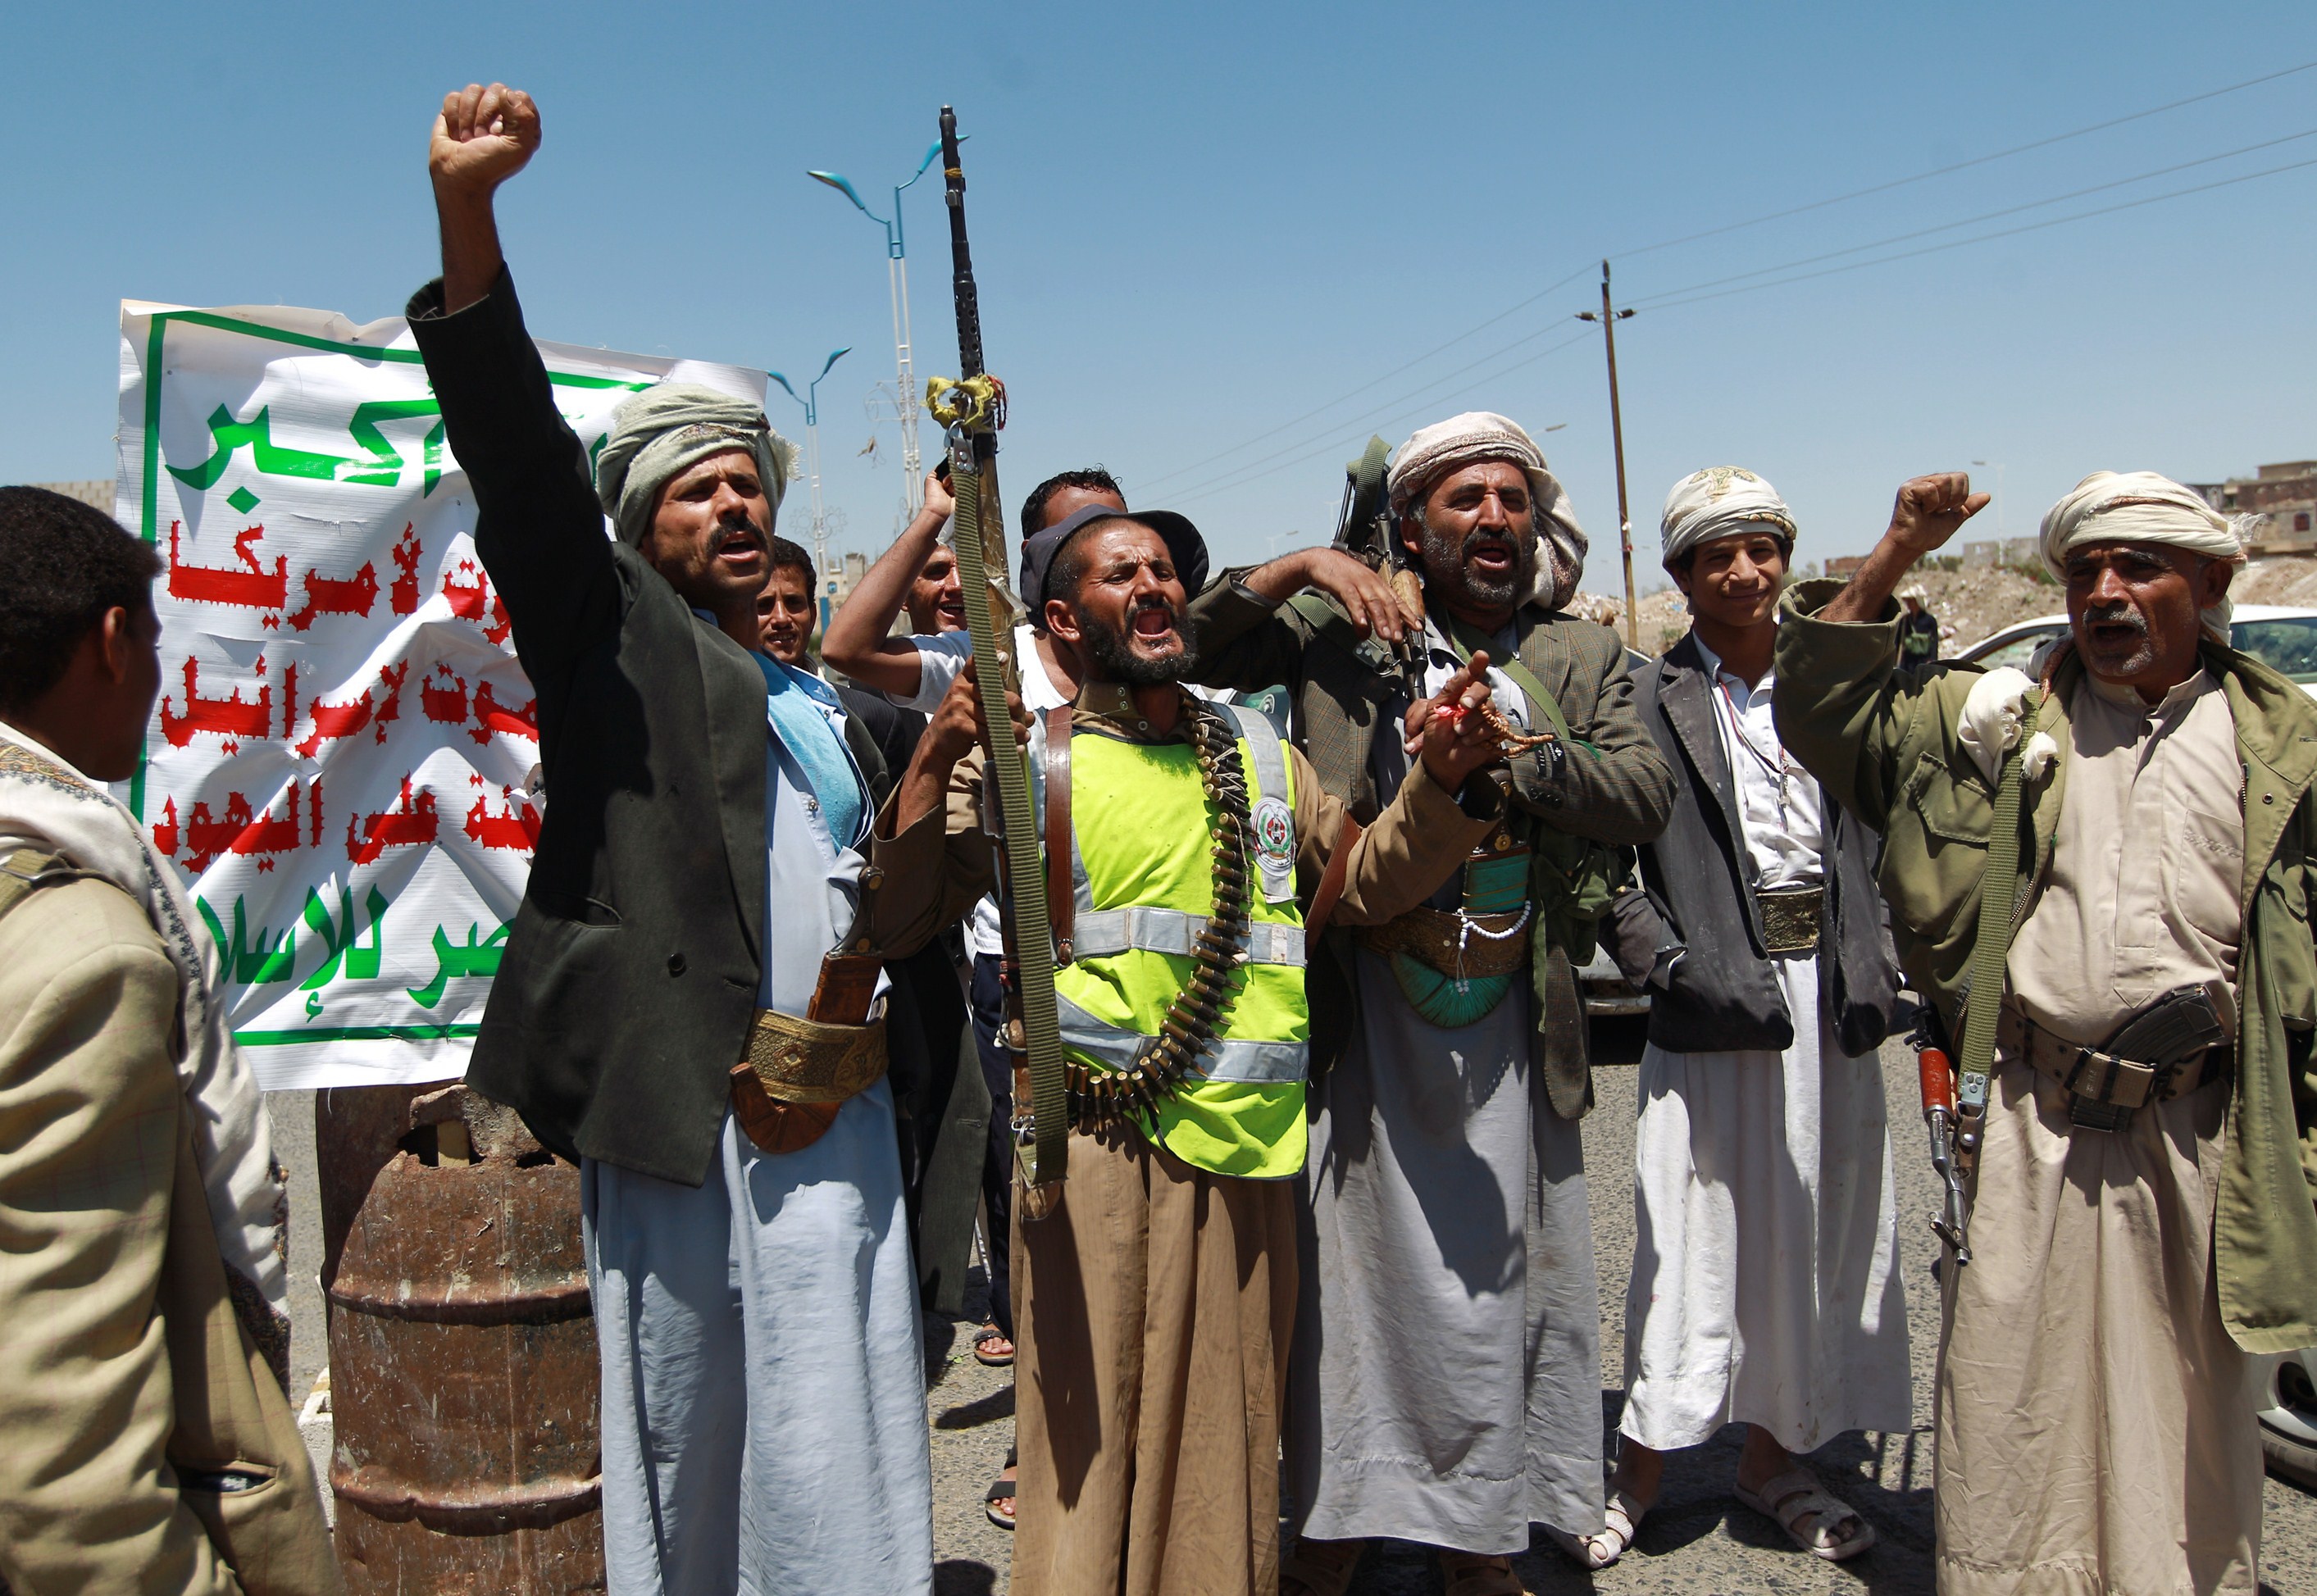 إخوان اليمن يدعون أنصارهم للصبر.. الشرطة والحوثيون  أصدقاء  ووكالات إيرانية تحذر السعودية من انتقال الثورة إليها - CNNArabic.com